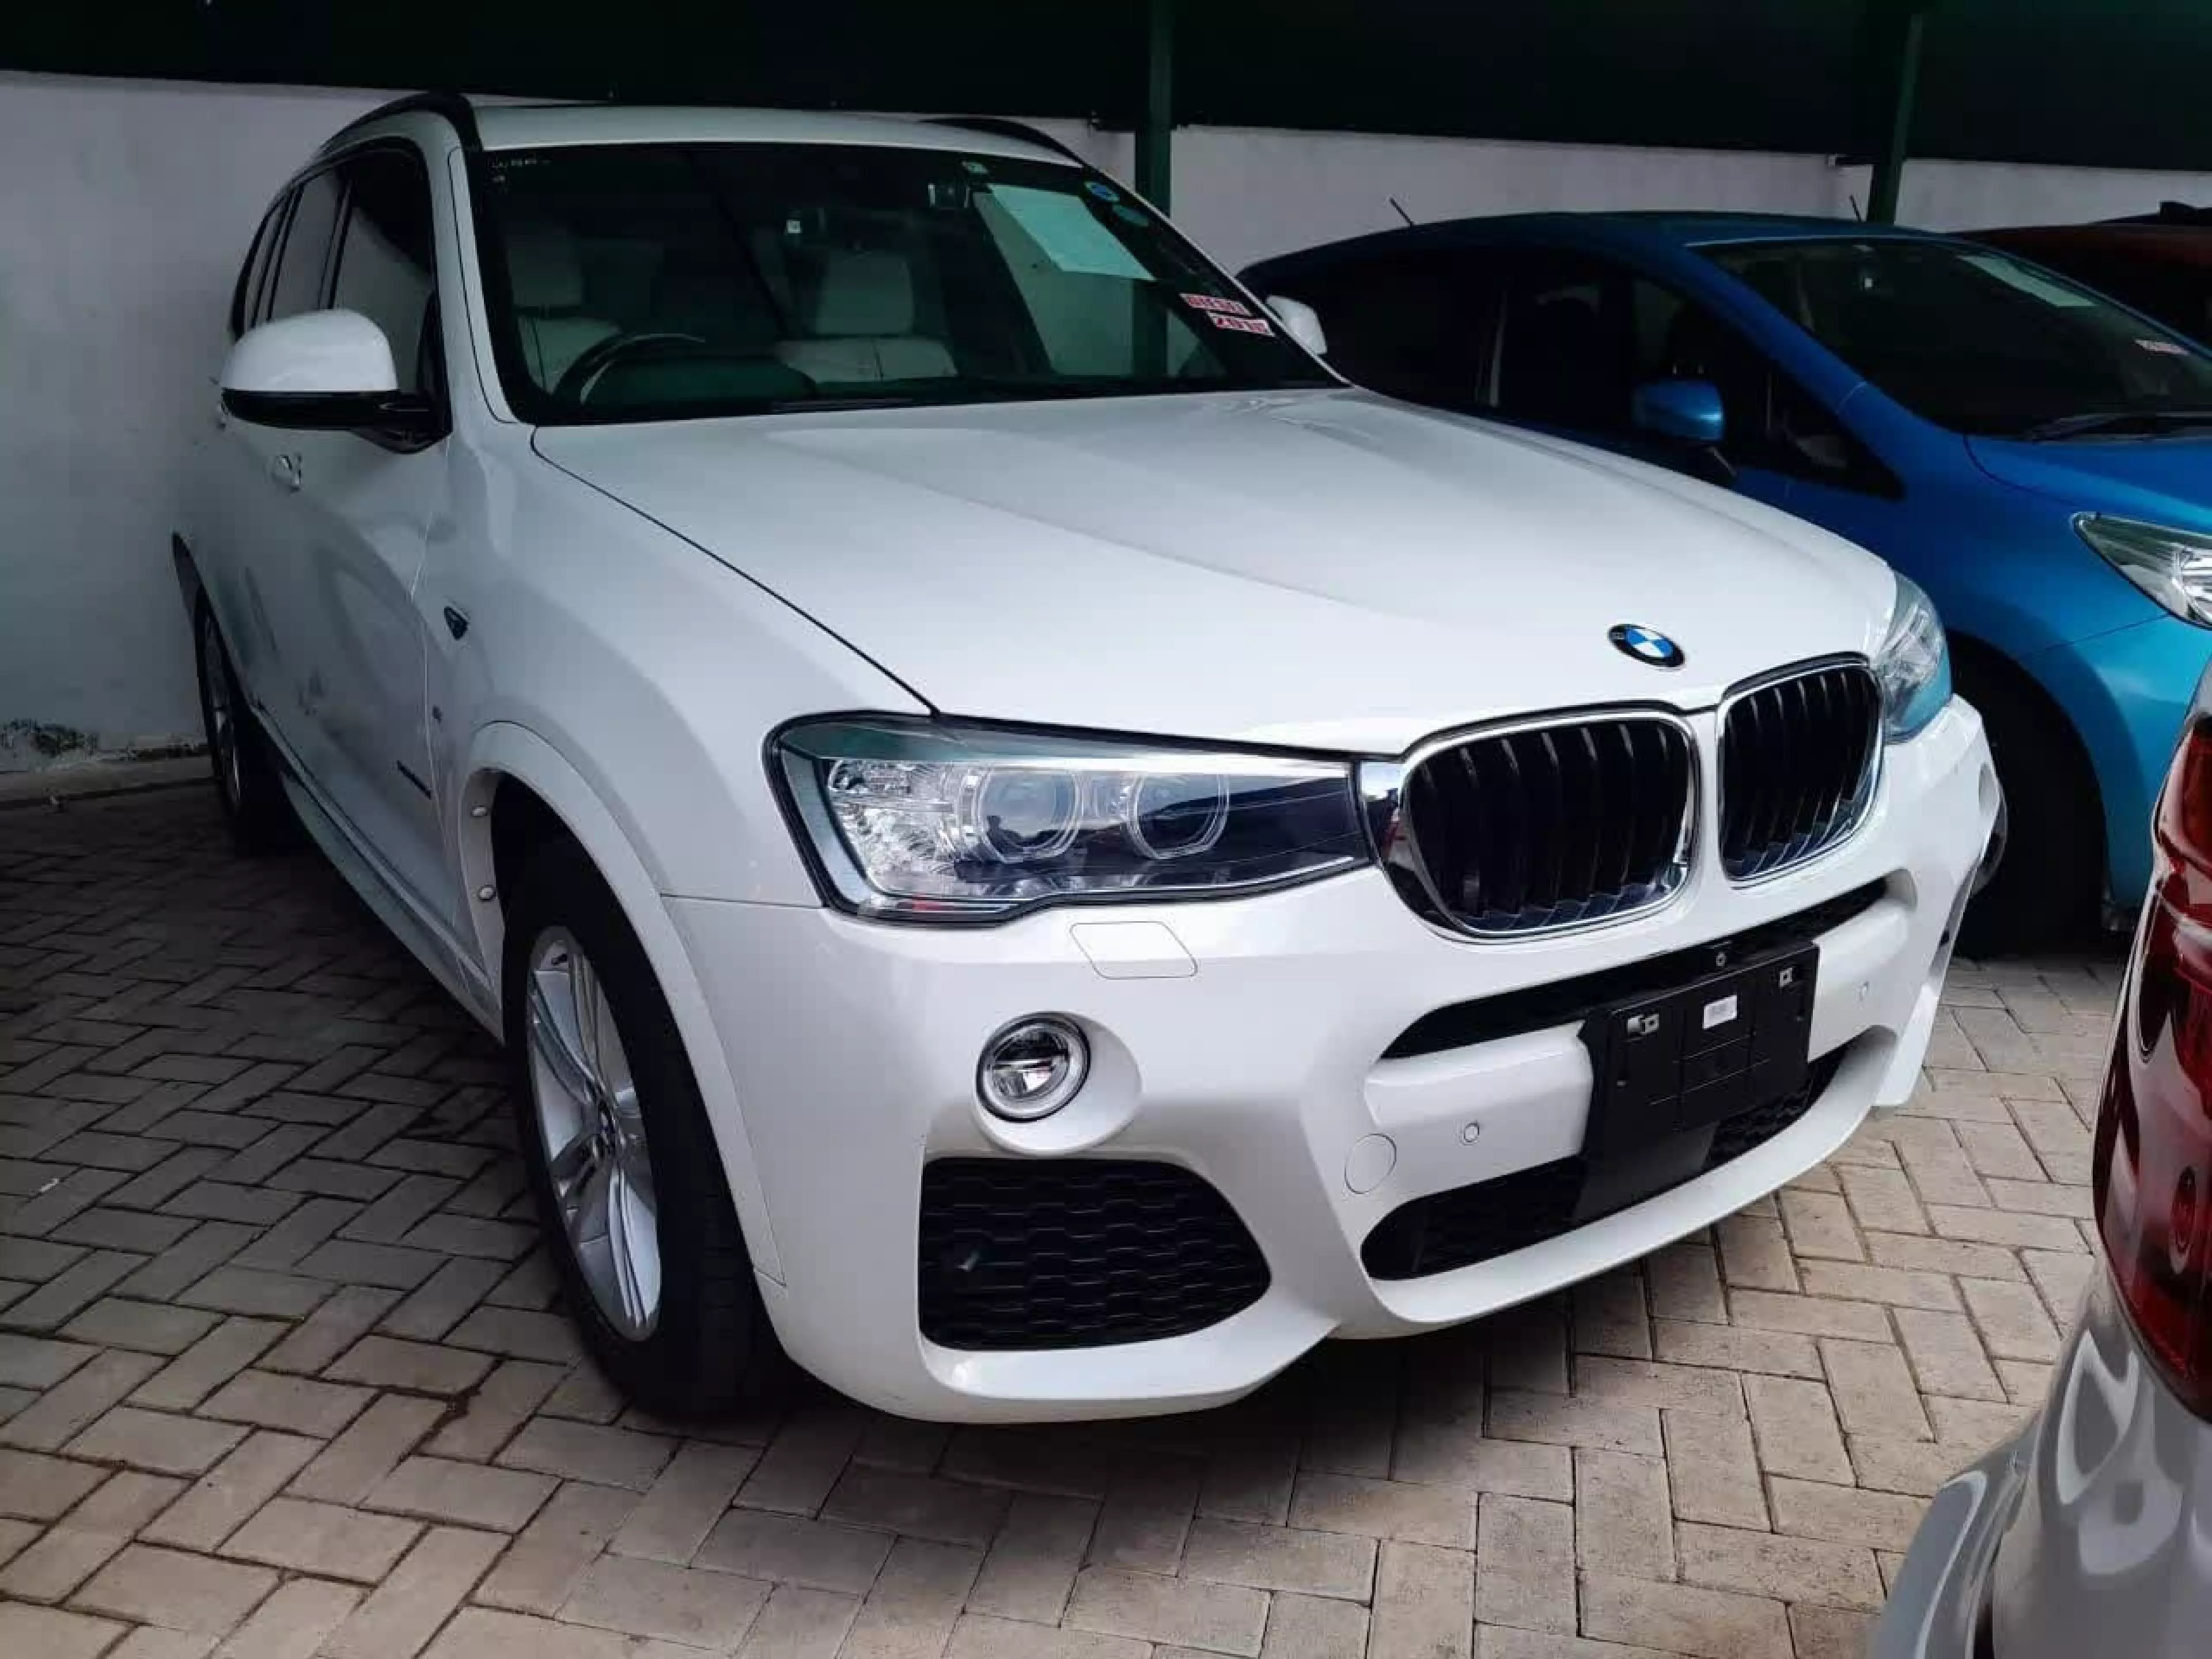 BMW X3 - 2016